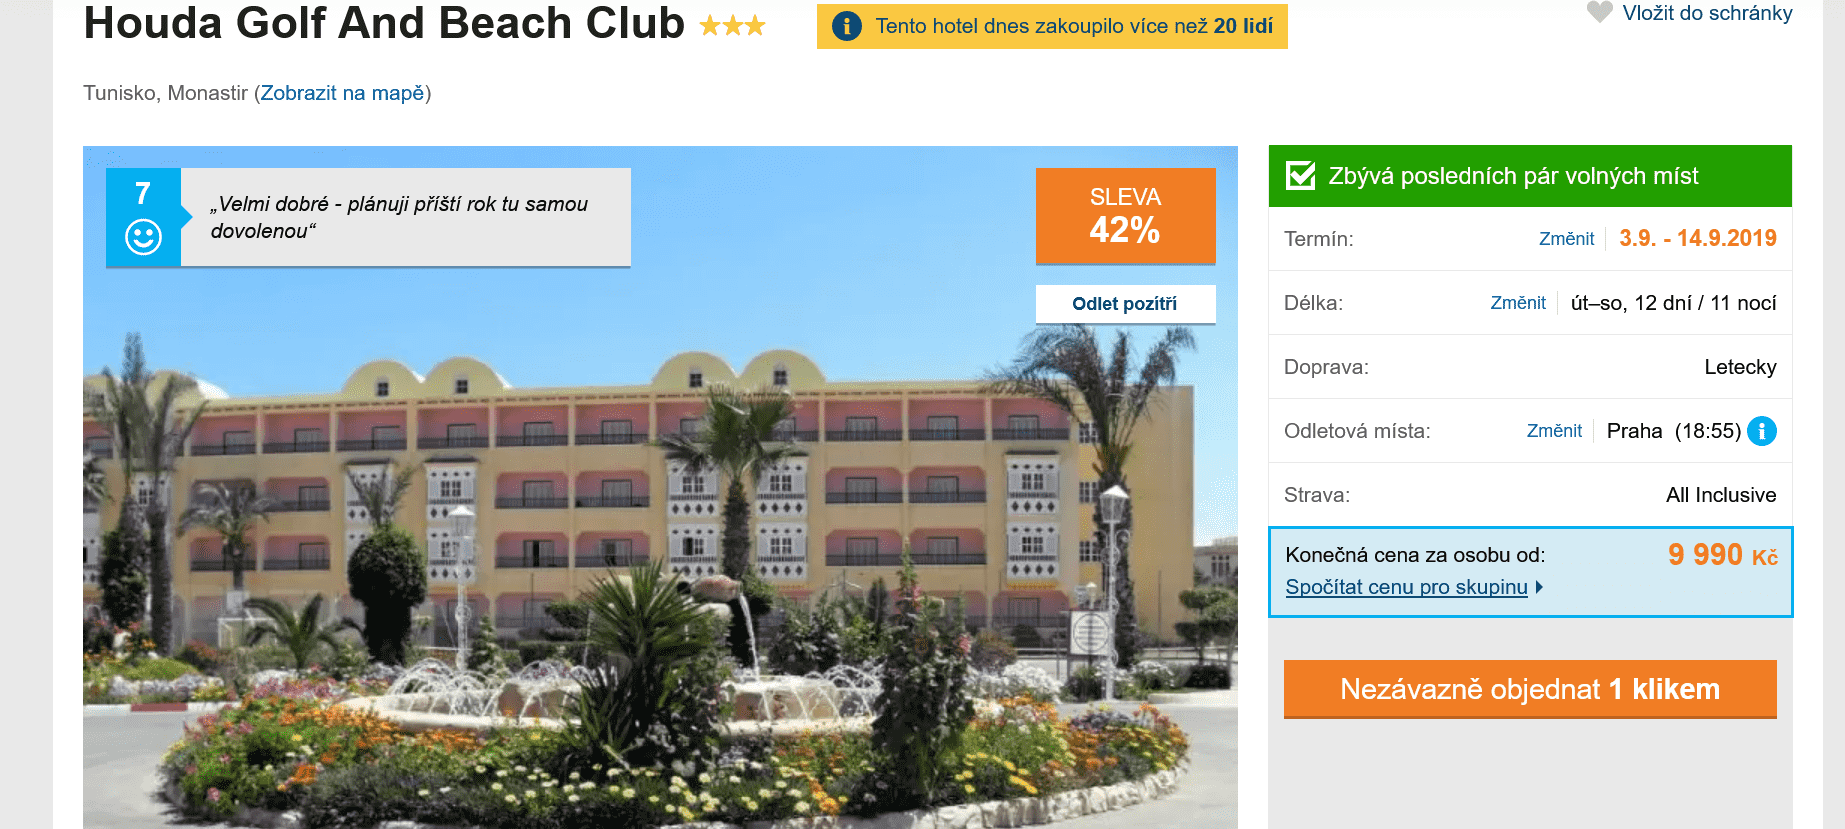 Zájezd Tunisko (hotel Houda Golf and Beach Club)